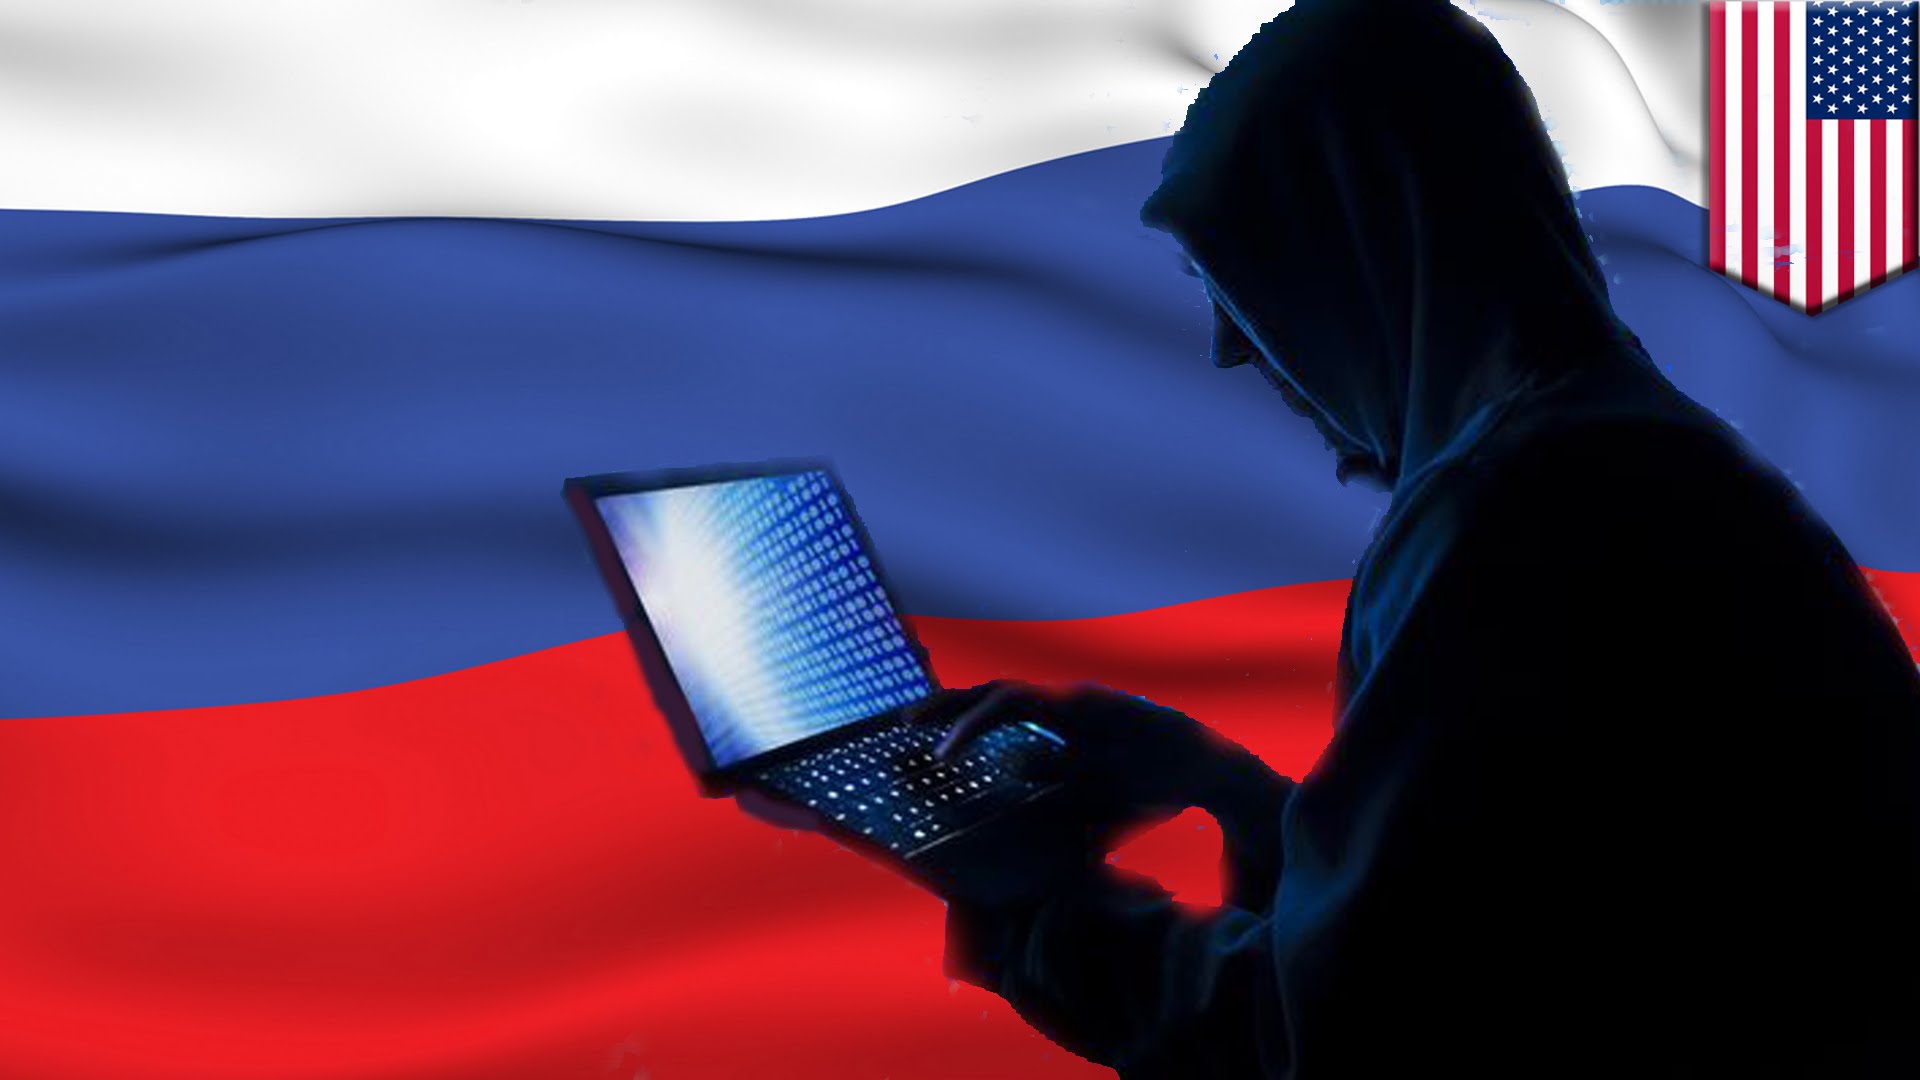 Nő a panaszok száma, de hivatalosan rendben zajlik a szavazás Oroszországban